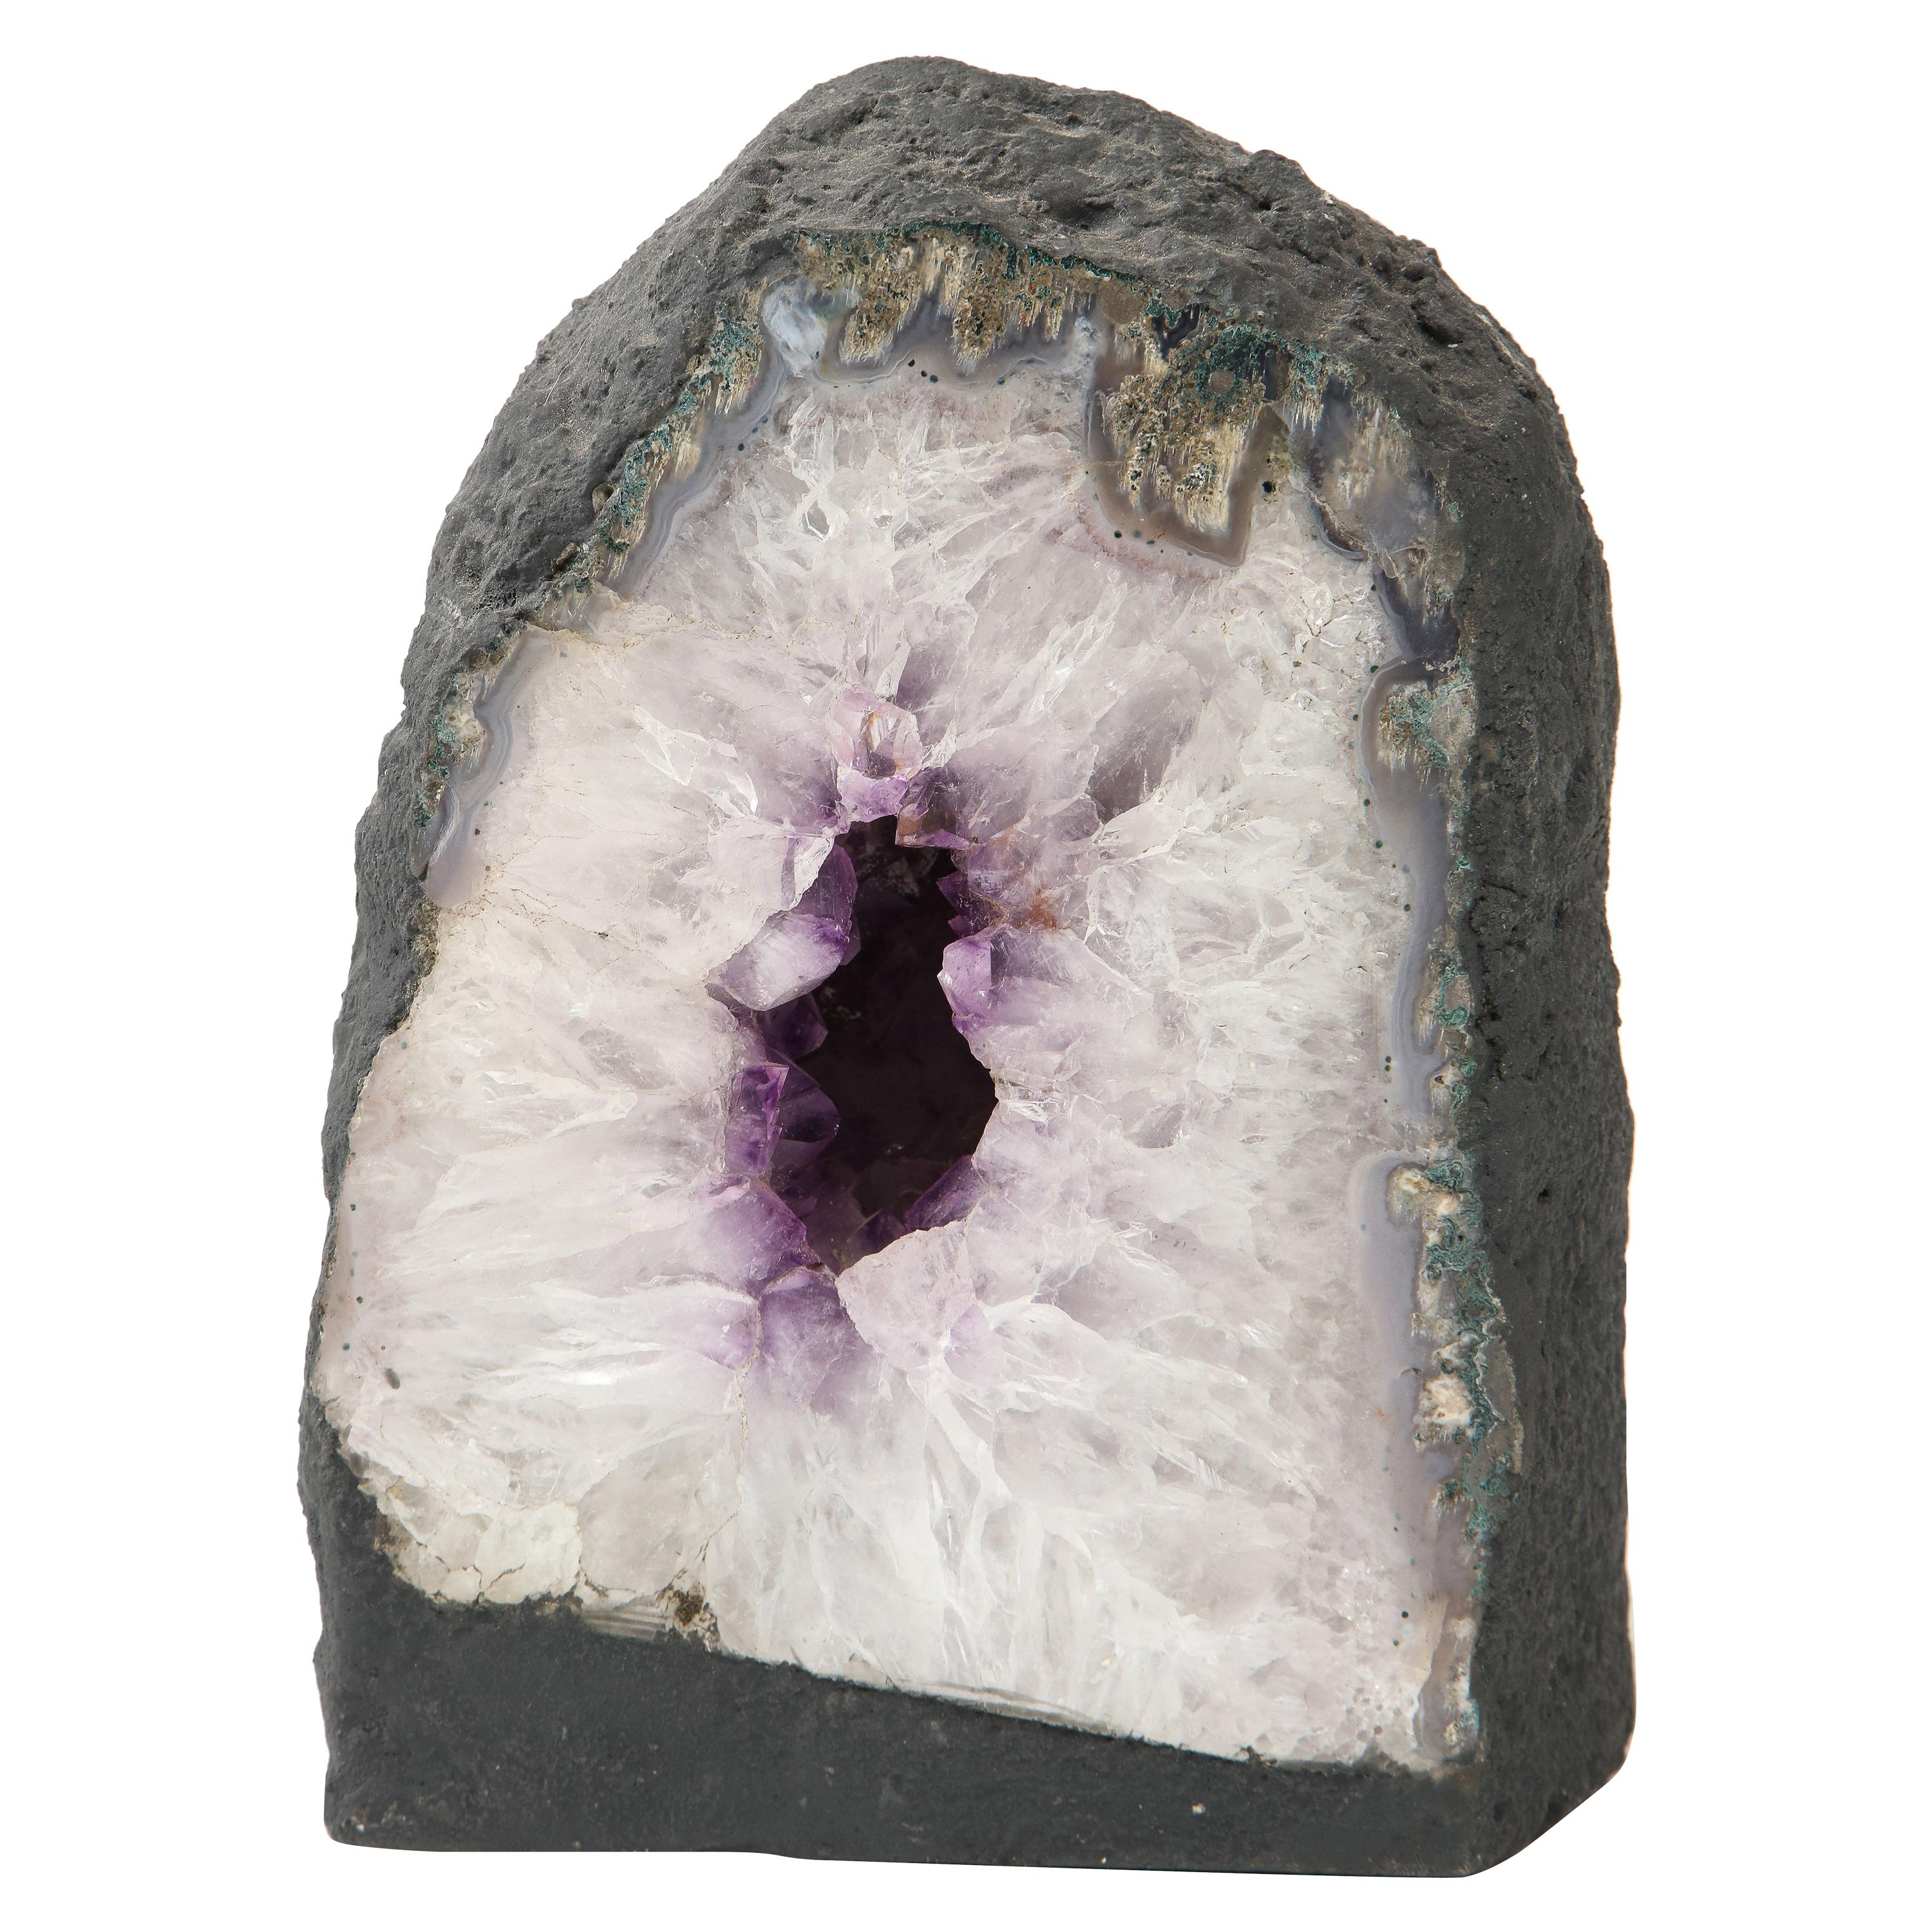 Large Crystal, Amethyst Geode Specimen